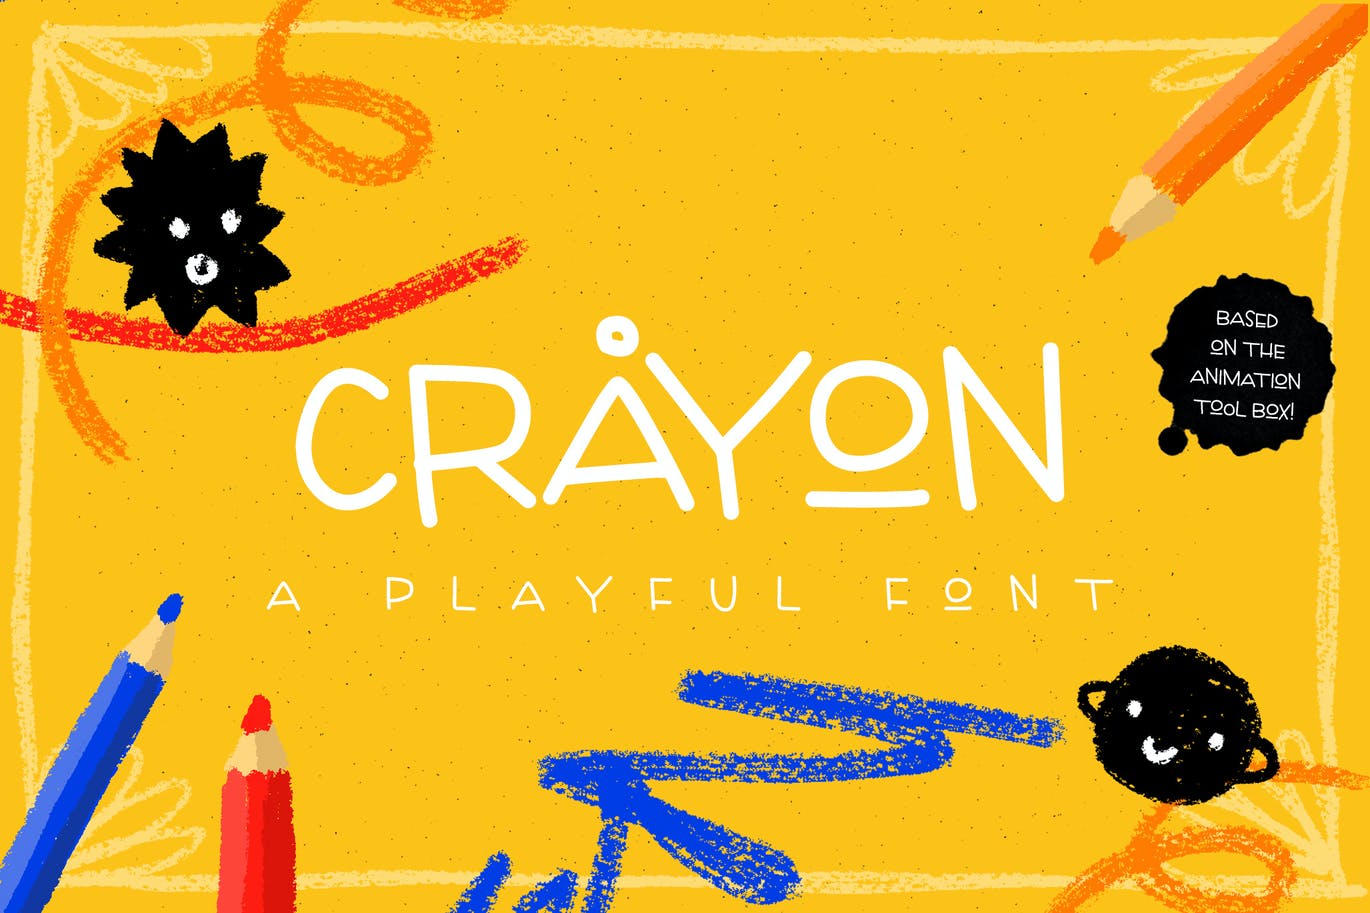 俏皮可爱的儿童主题设计英文字体 Crayon - playf